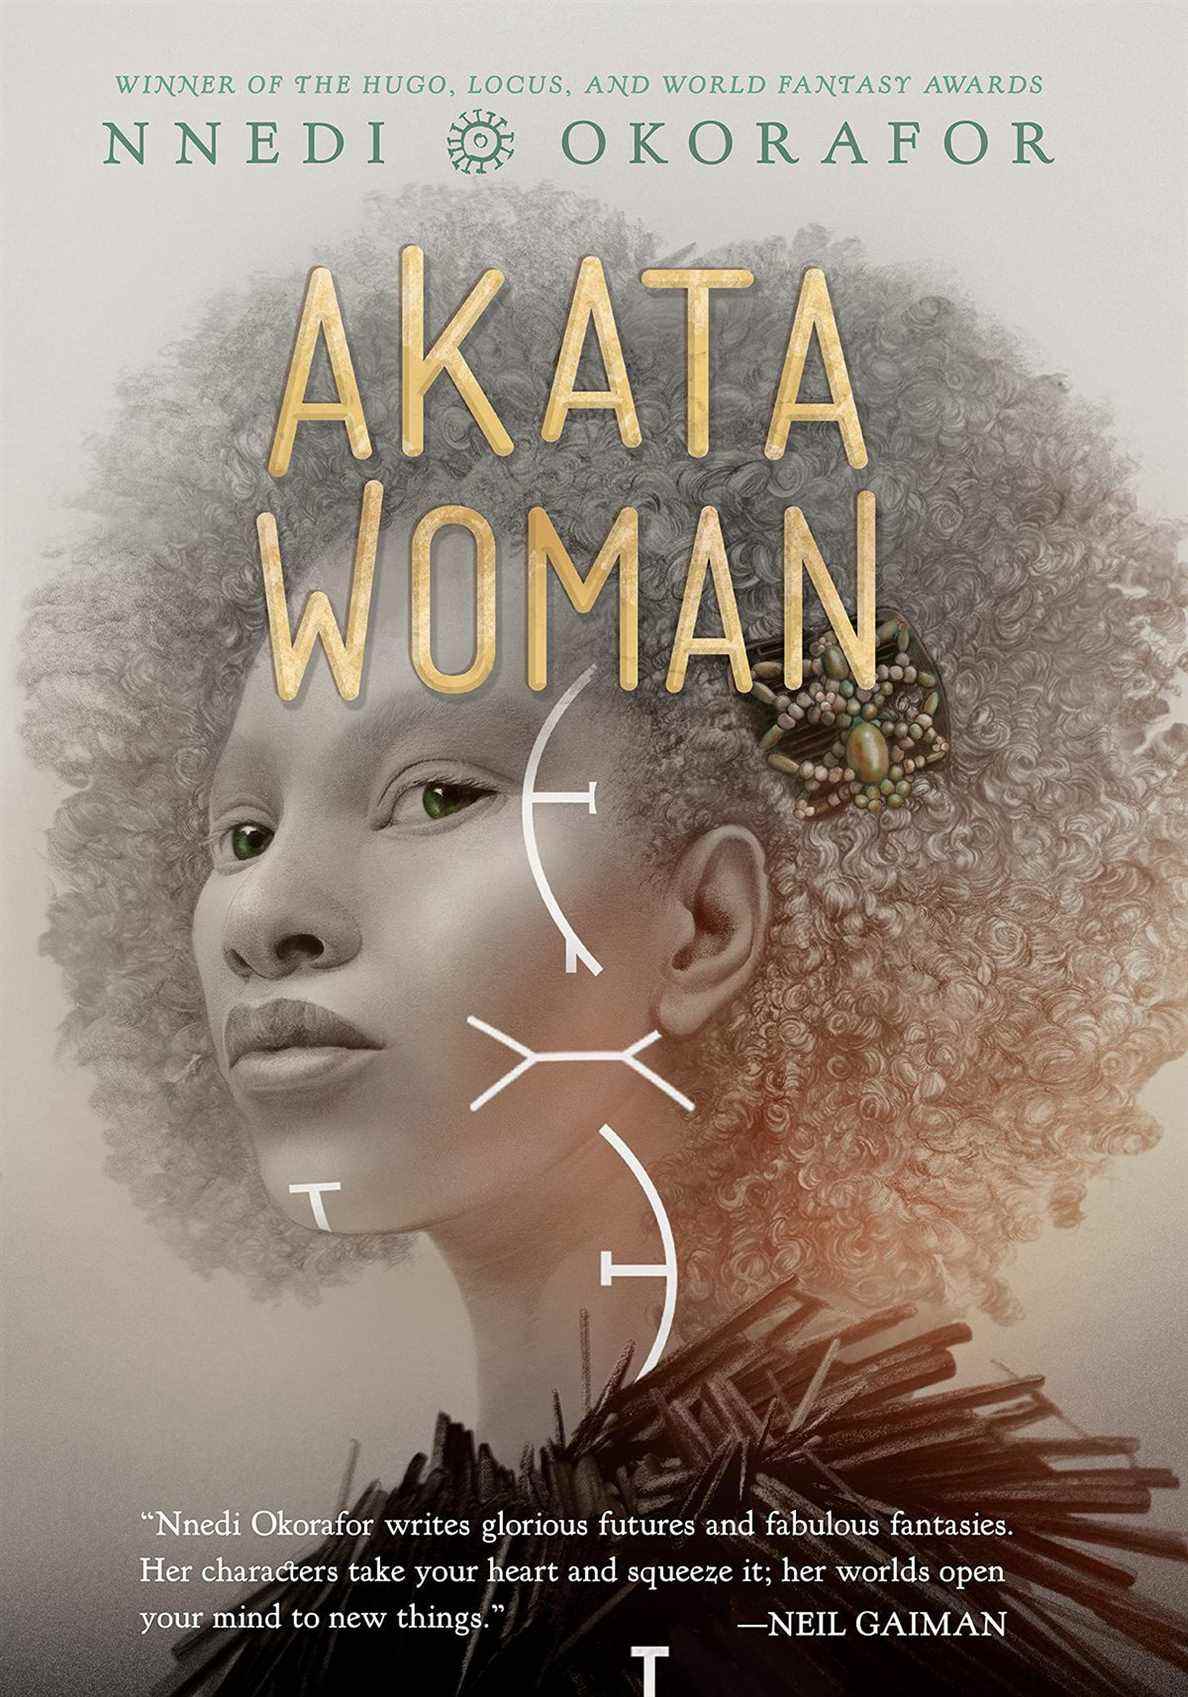 La couverture d'Akata Woman montrant le demi-profil d'une femme avec un afro, illustrée en niveaux de gris